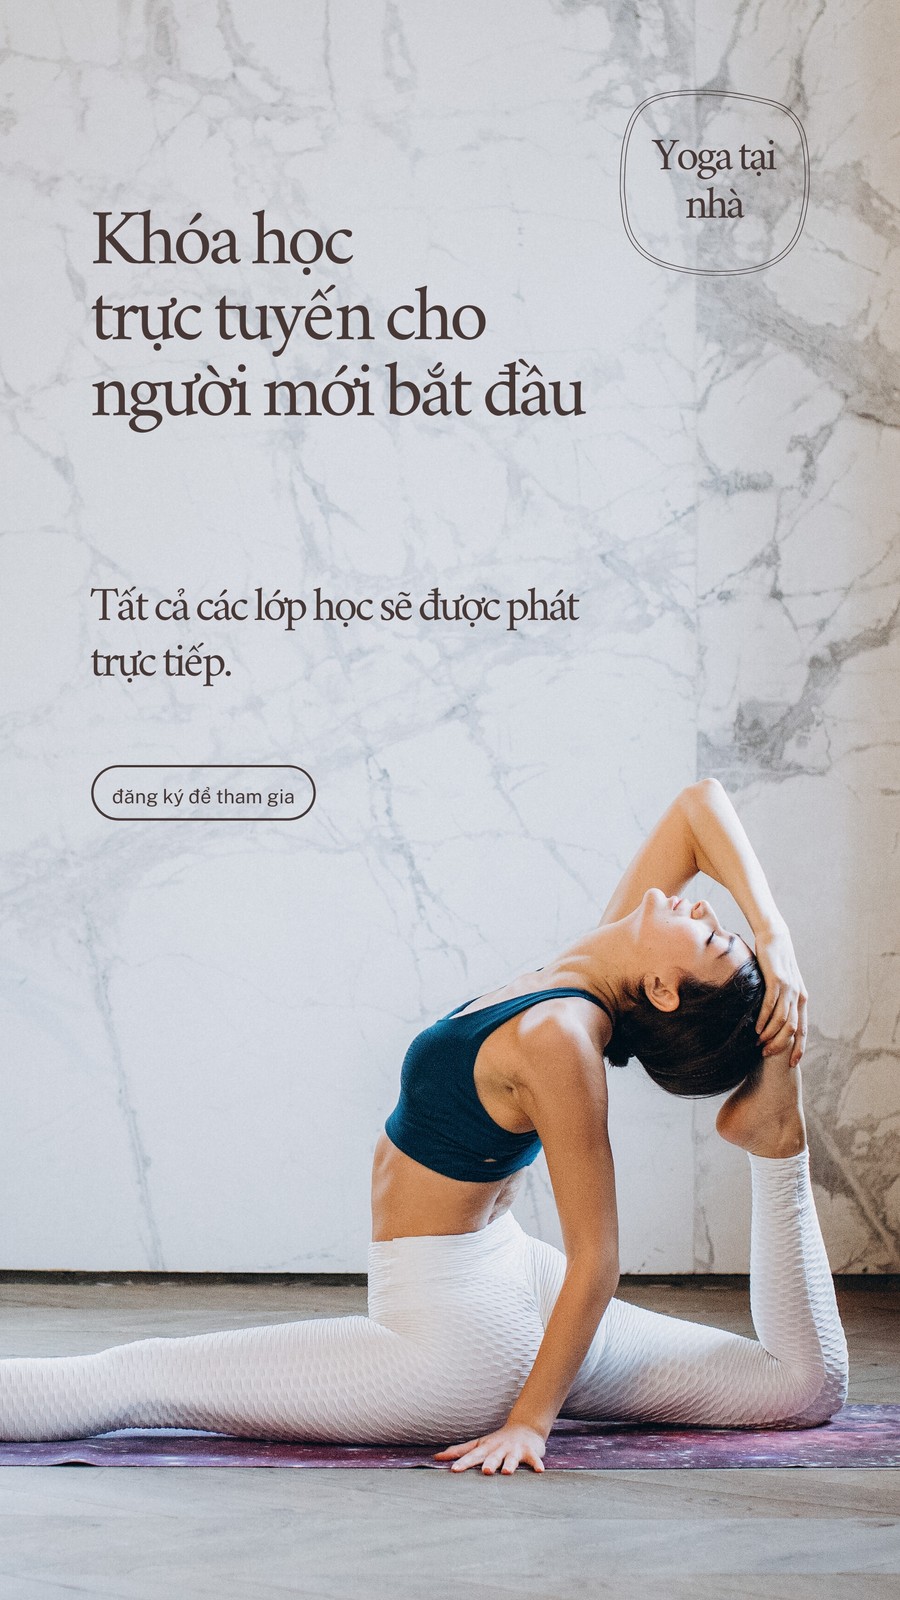 Hình nền Yoga đẹp cho PC và điện thoại - Ảnh đẹp Free